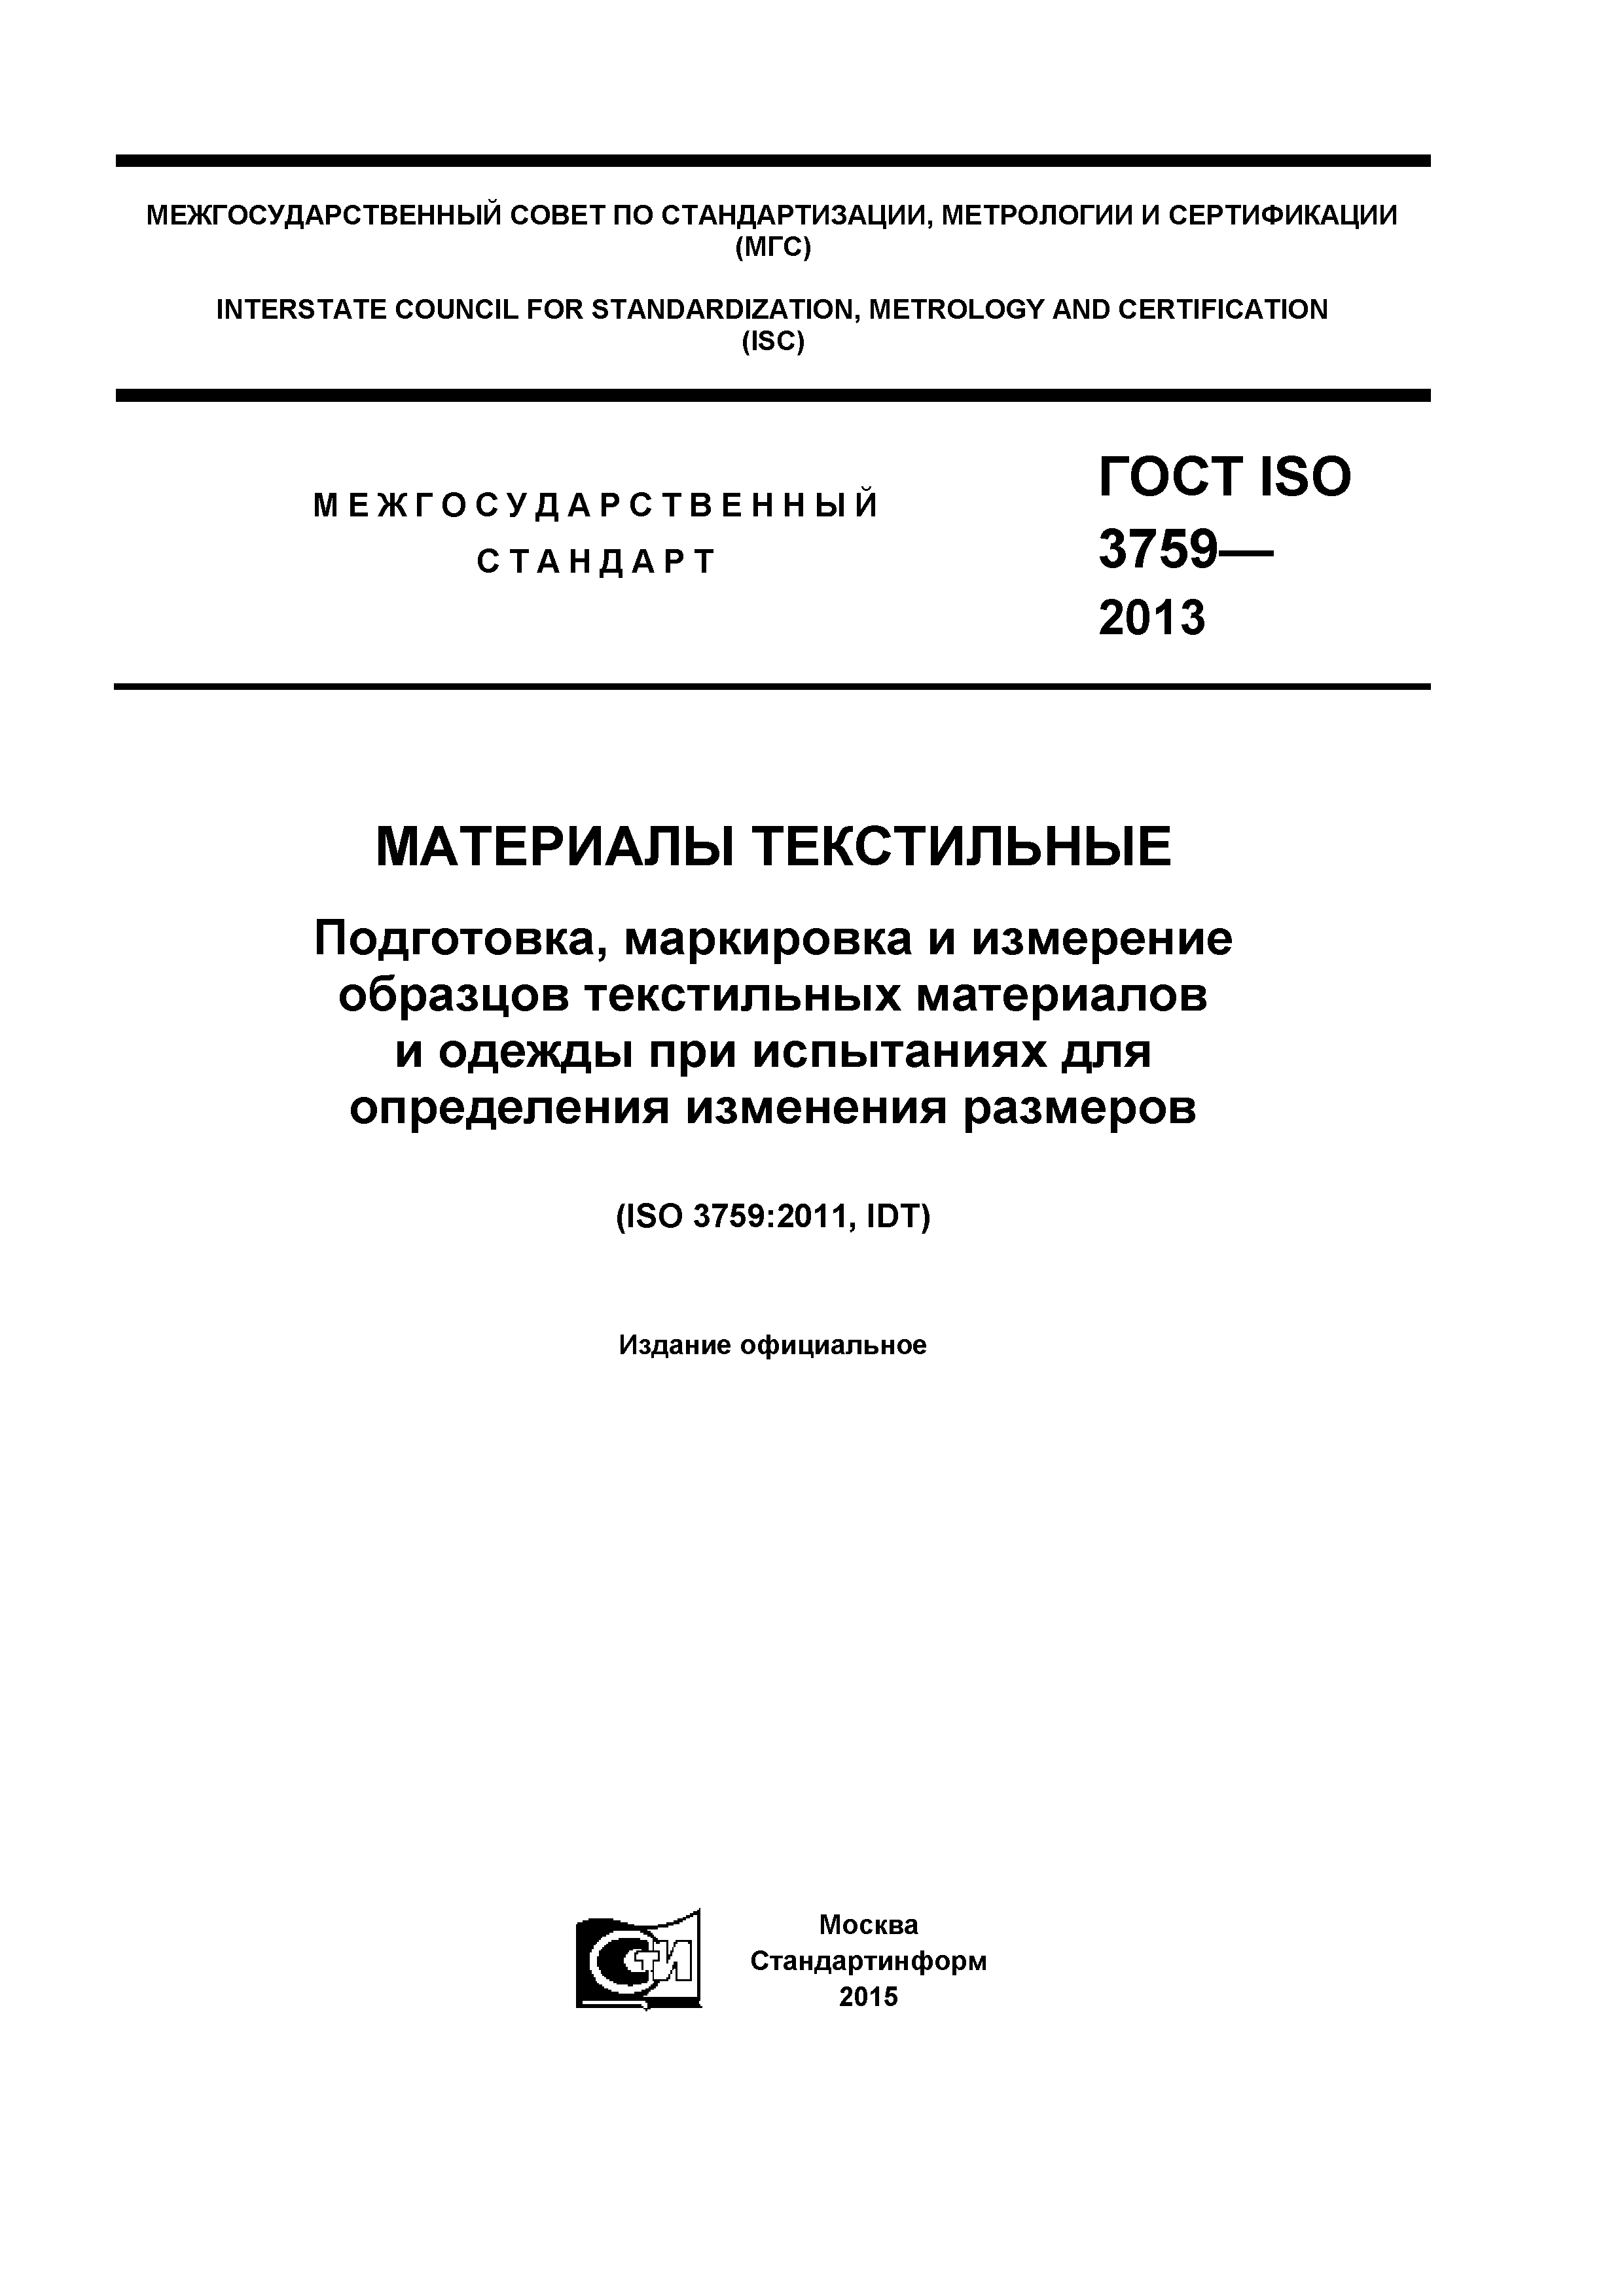 ГОСТ ISO 3759-2013